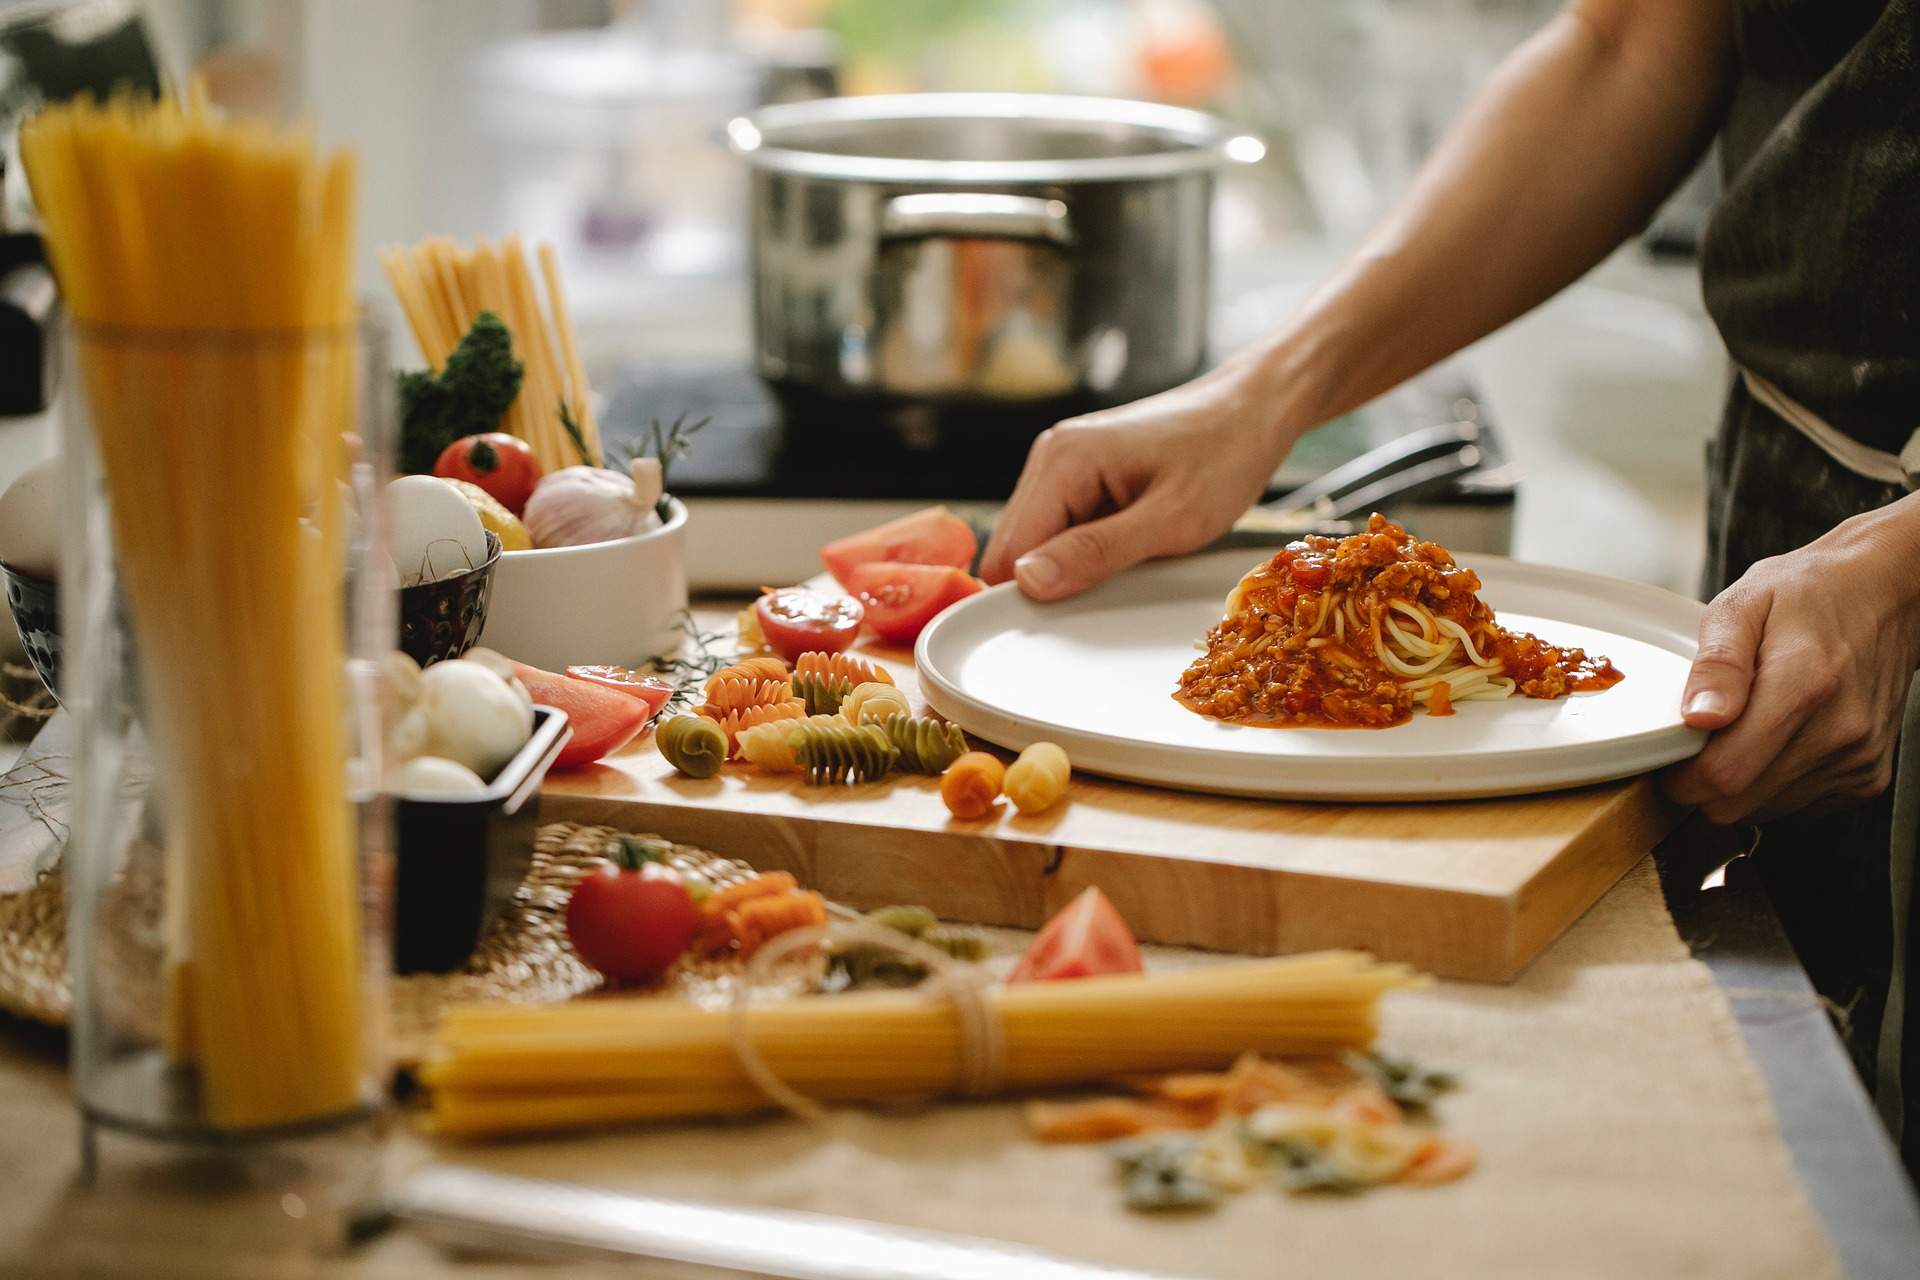 Los jóvenes no saben cocinar: un estudio explica los malos hábitos alimentarios de los universitarios